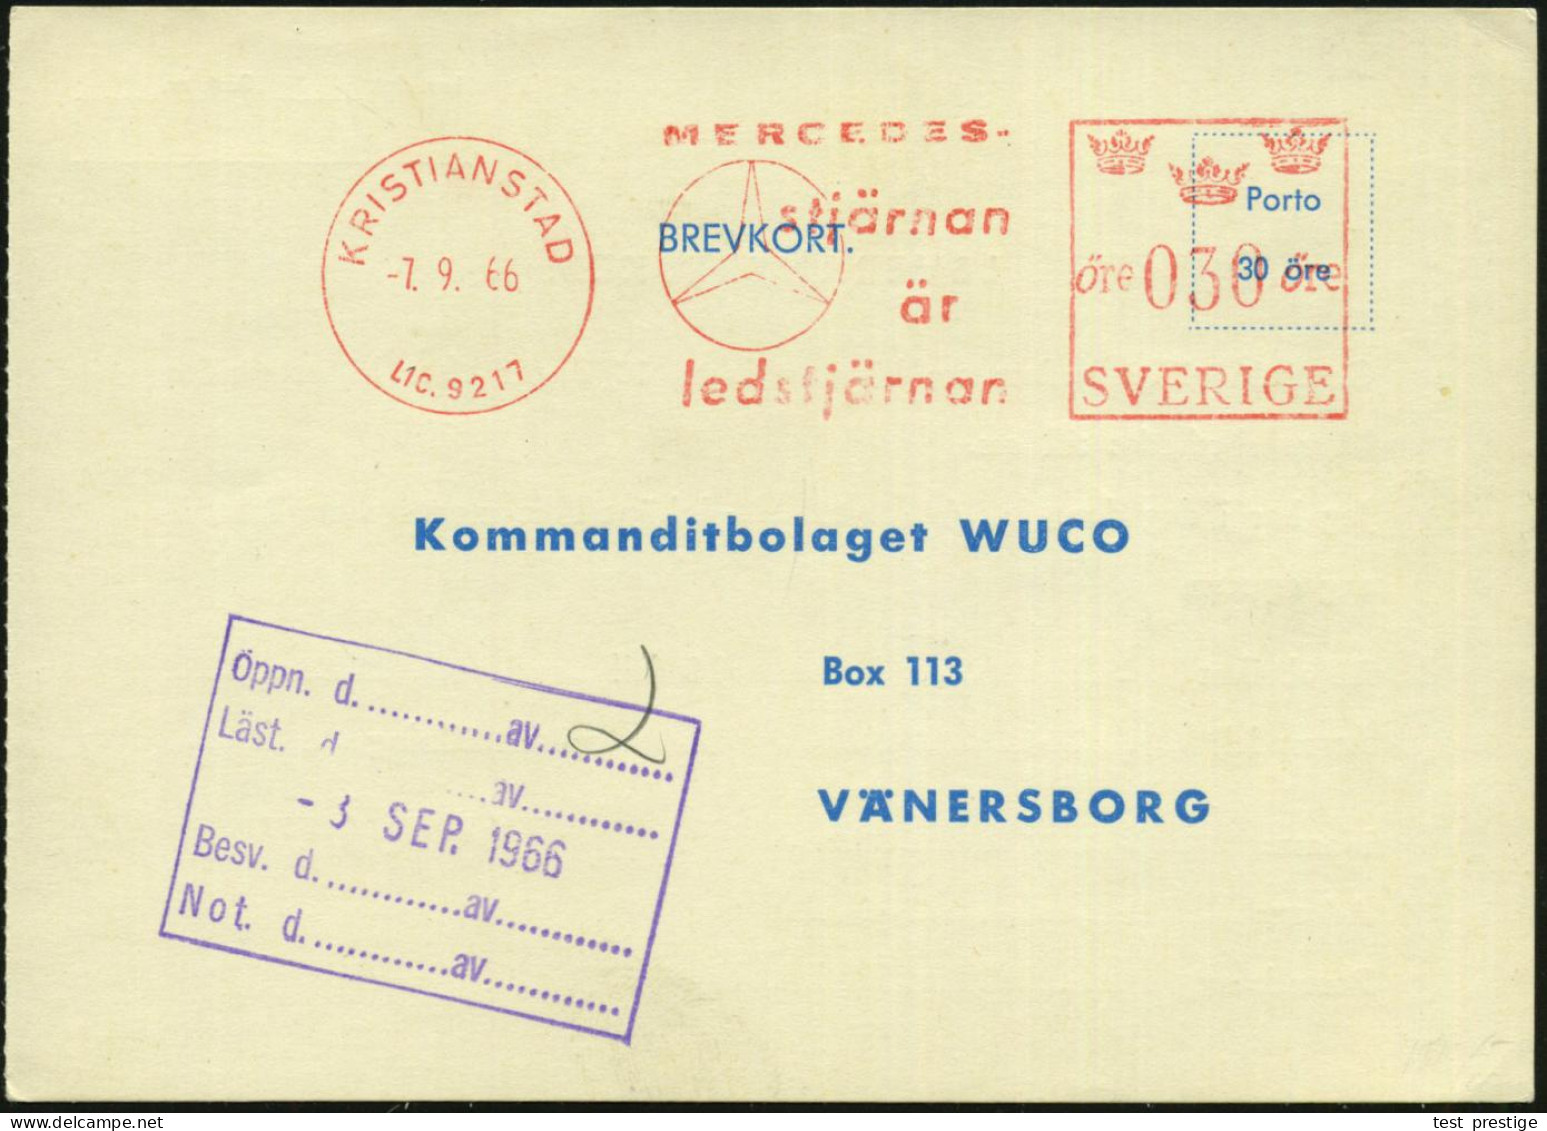 SCHWEDEN 1966 (7.9.) AFS: KRISTIANSAND/LIC.9217/MERCEDES/stjärnan.. = MB-Stern , Werkstatt-Kt. Für Einen Simca! - MERCED - Coches